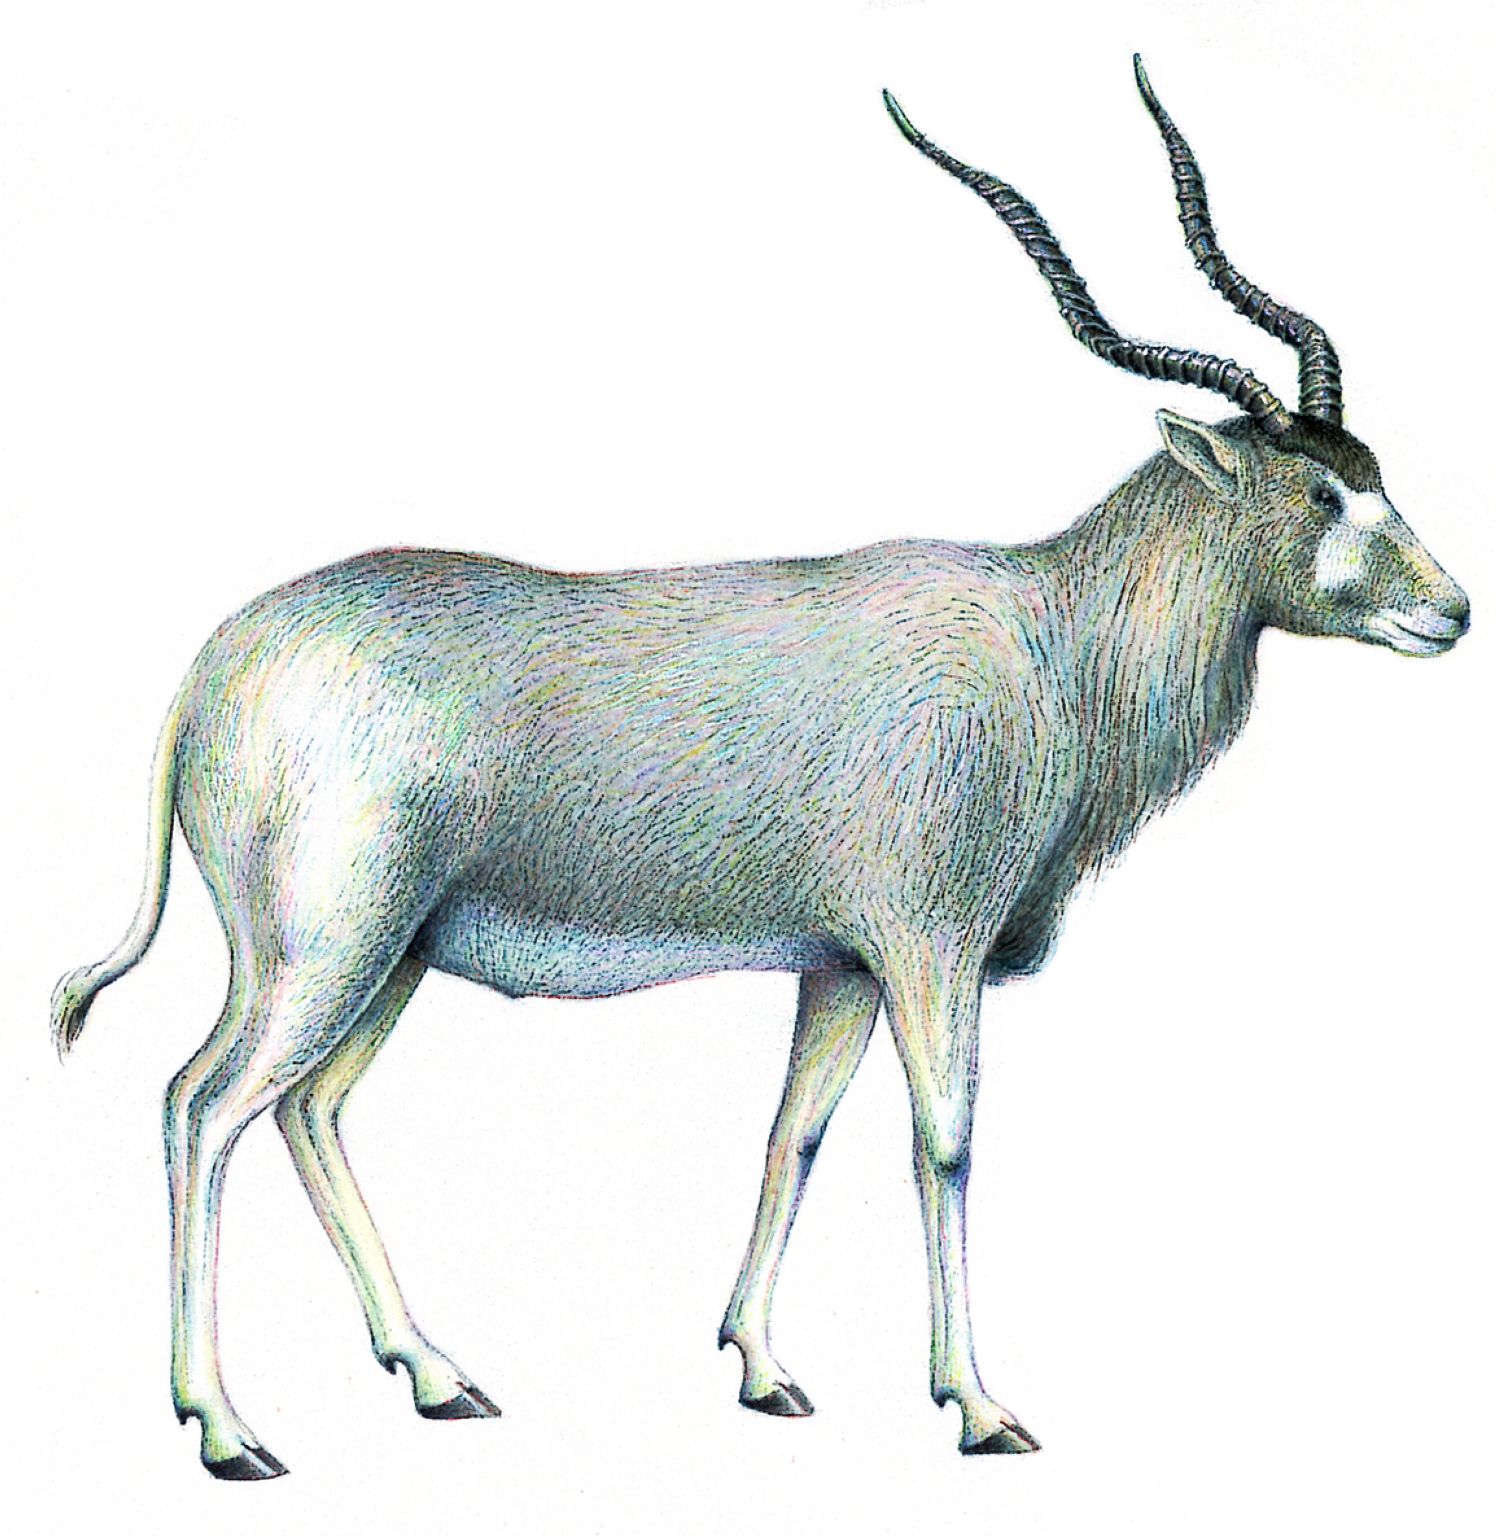 un addax (antilope à nez tacheté)